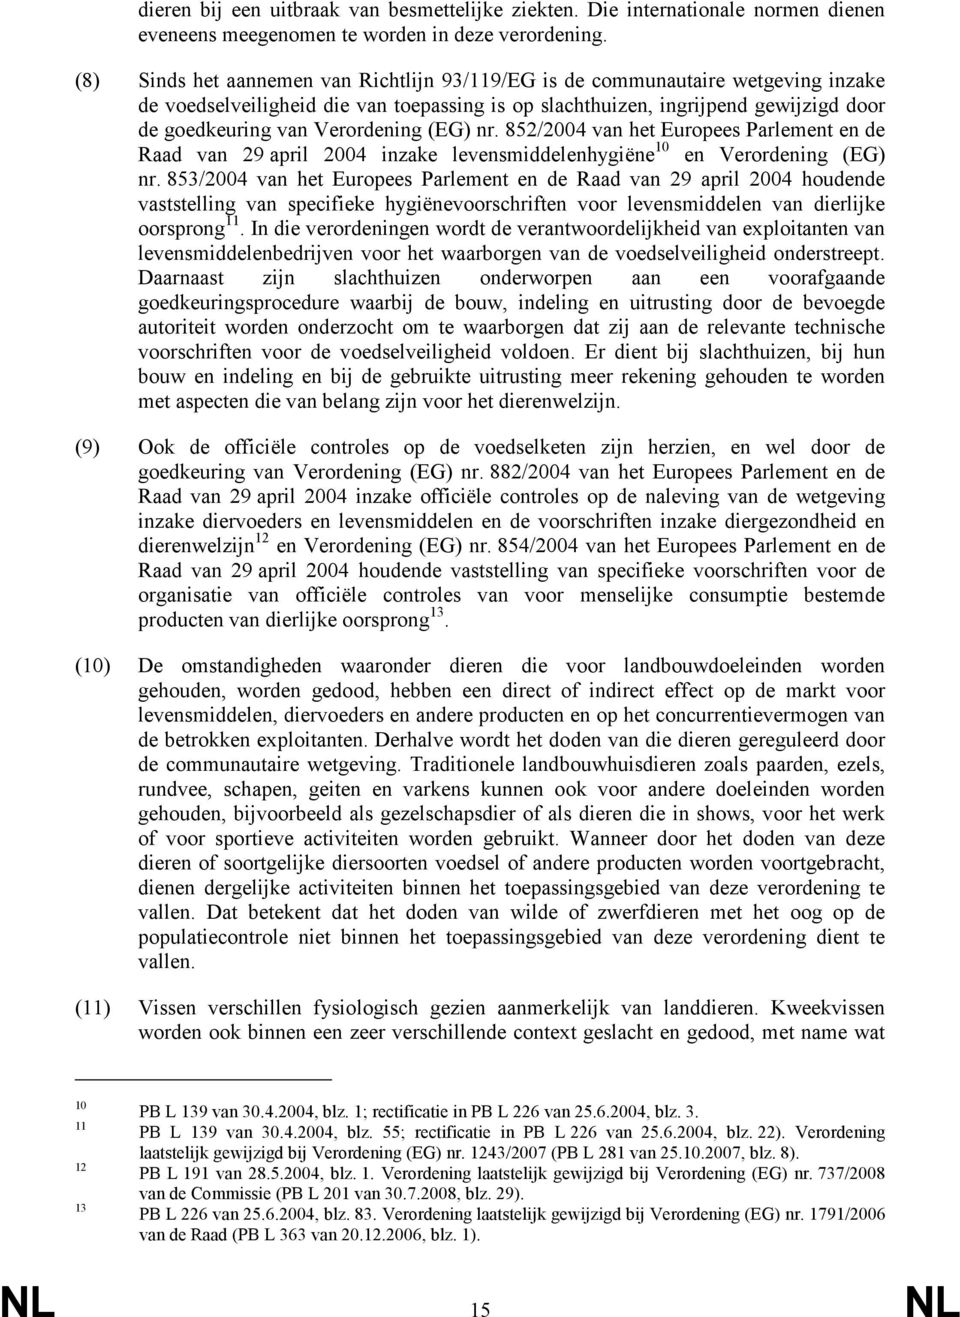 Verordening (EG) nr. 852/2004 van het Europees Parlement en de Raad van 29 april 2004 inzake levensmiddelenhygiëne 10 en Verordening (EG) nr.